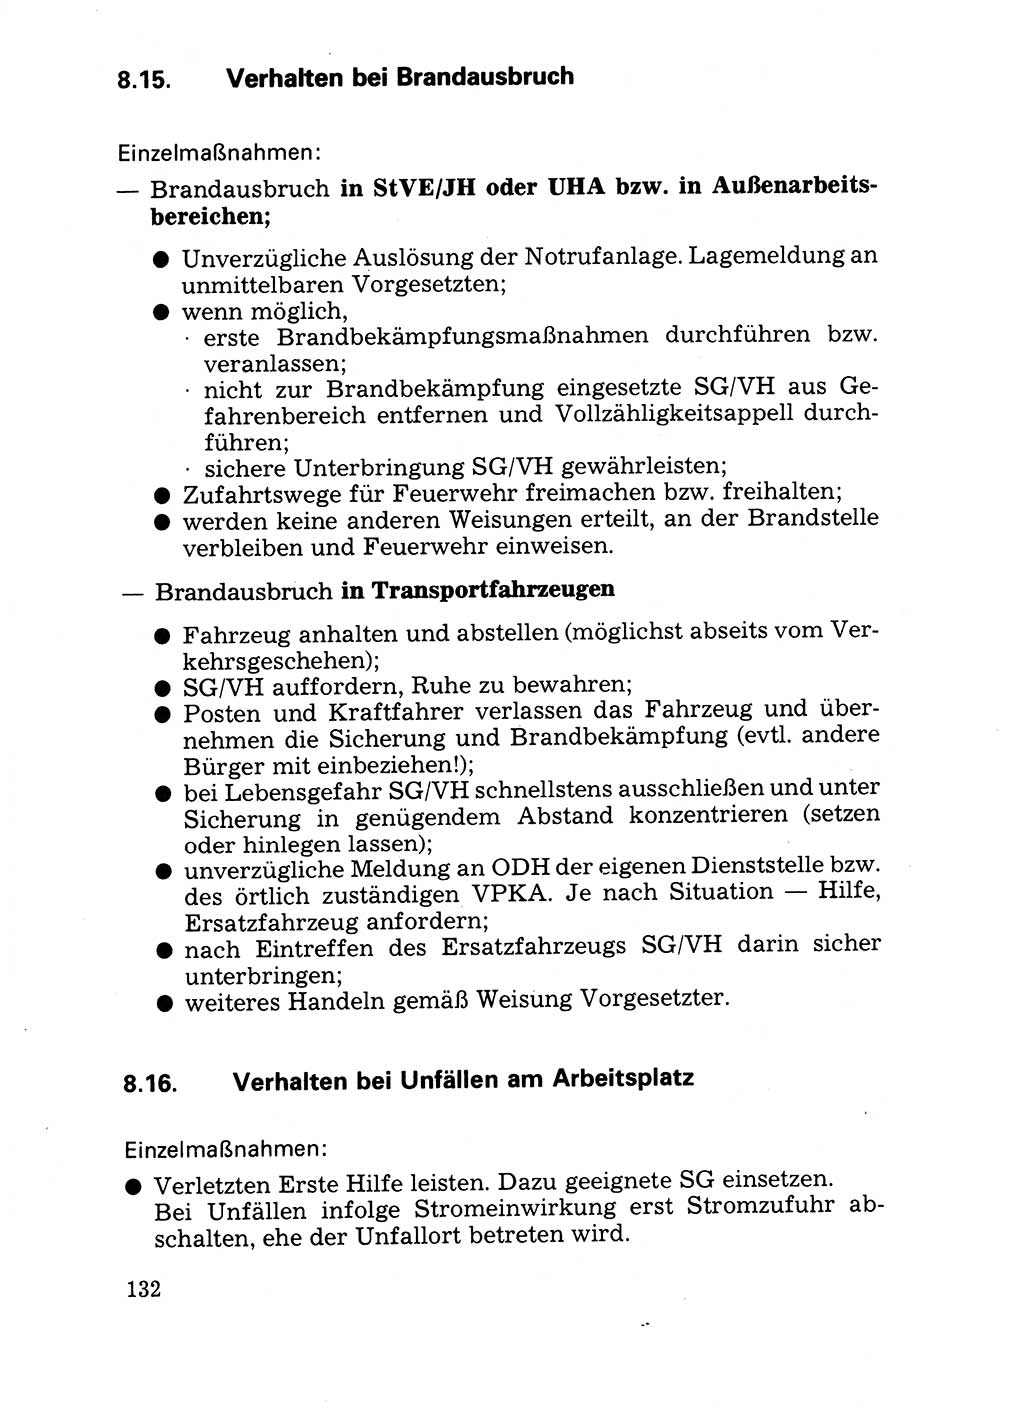 Handbuch für operative Dienste, Abteilung Strafvollzug (SV) [Ministerium des Innern (MdI) Deutsche Demokratische Republik (DDR)] 1981, Seite 132 (Hb. op. D. Abt. SV MdI DDR 1981, S. 132)